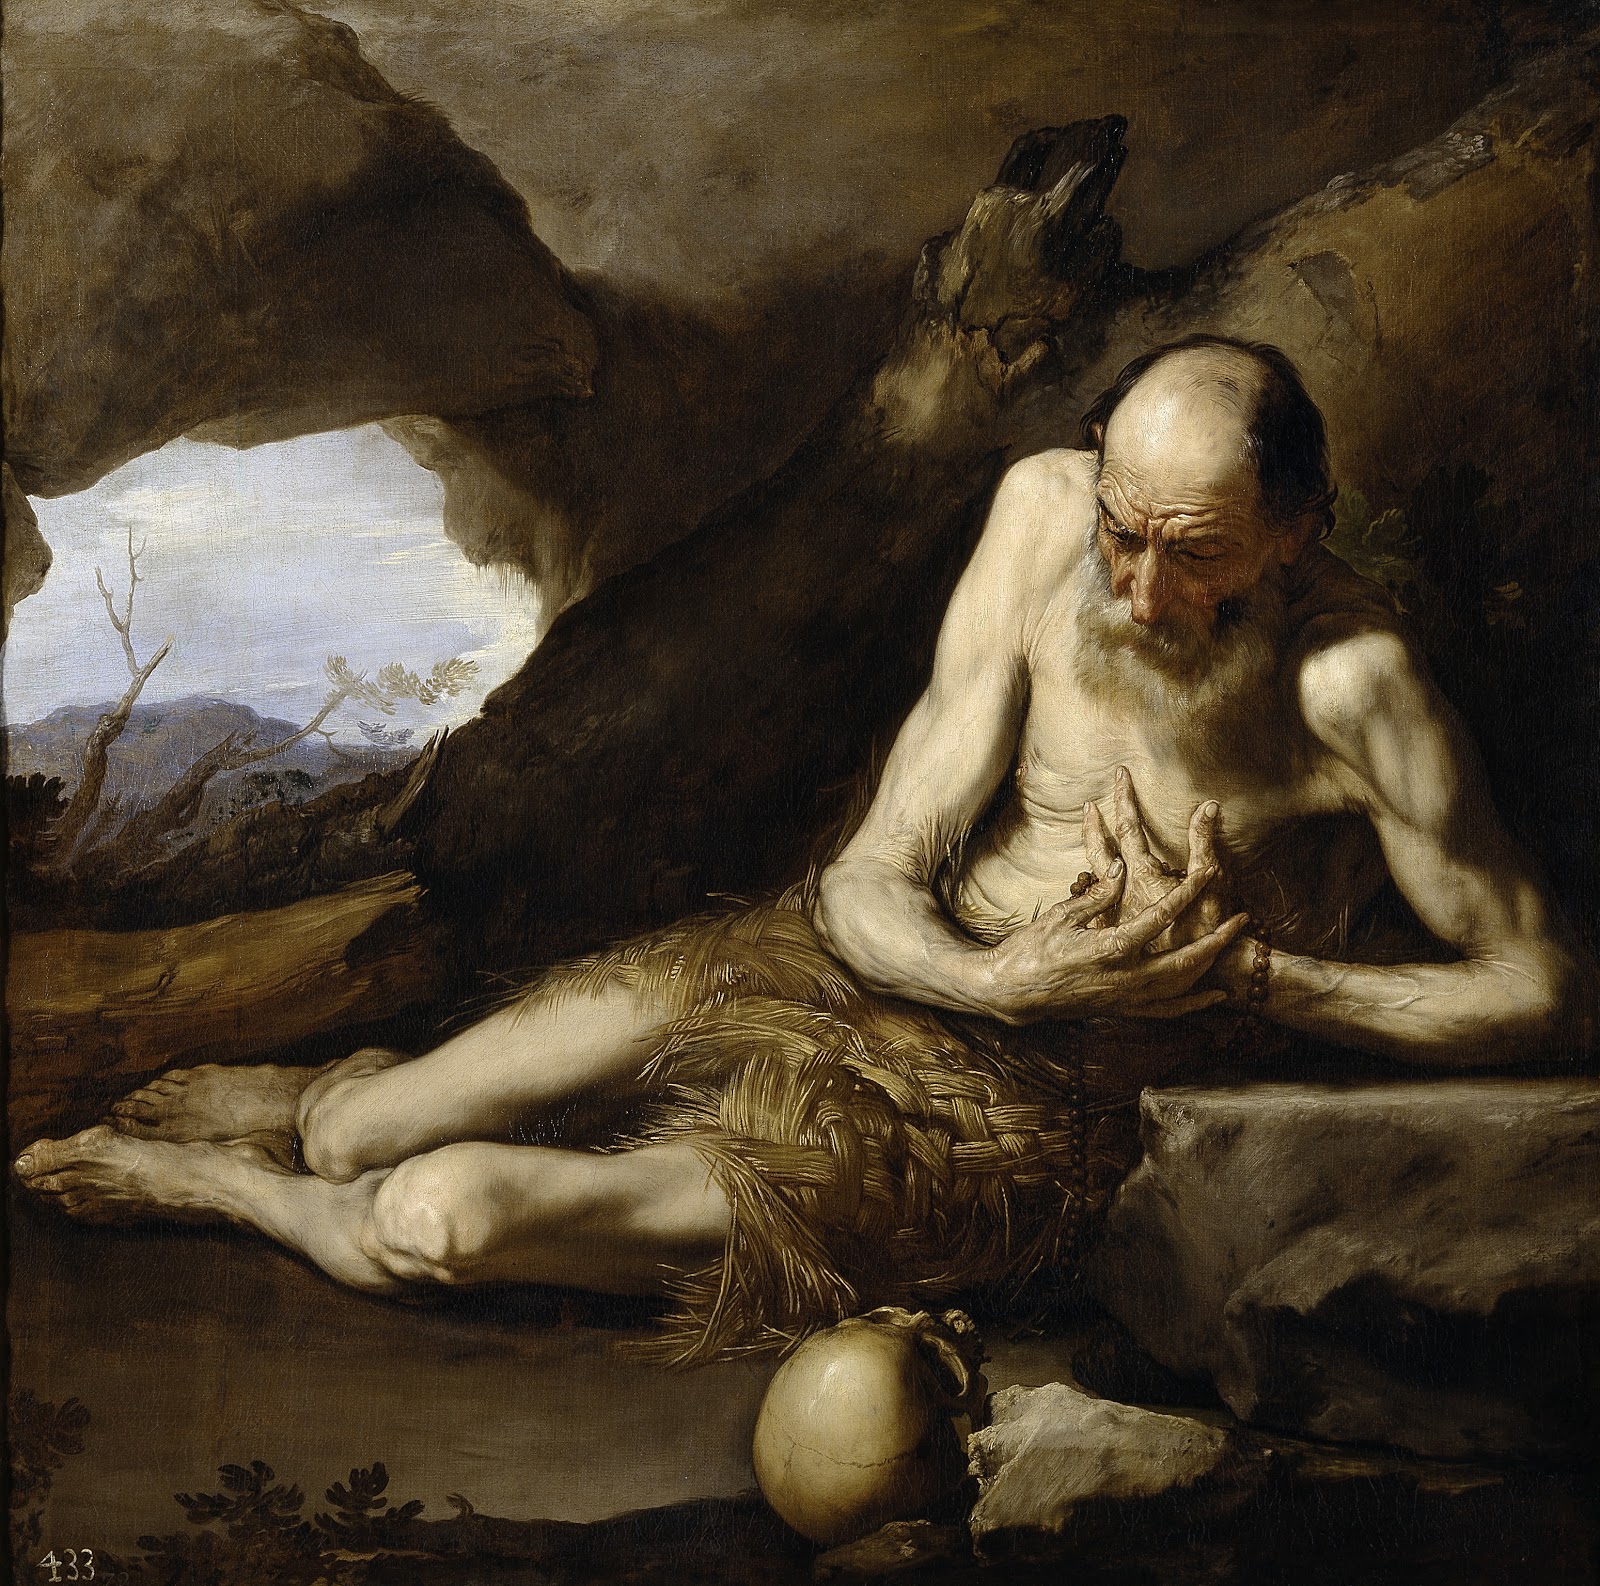 Jusepe+de+Ribera-1591-1652 (78).jpg